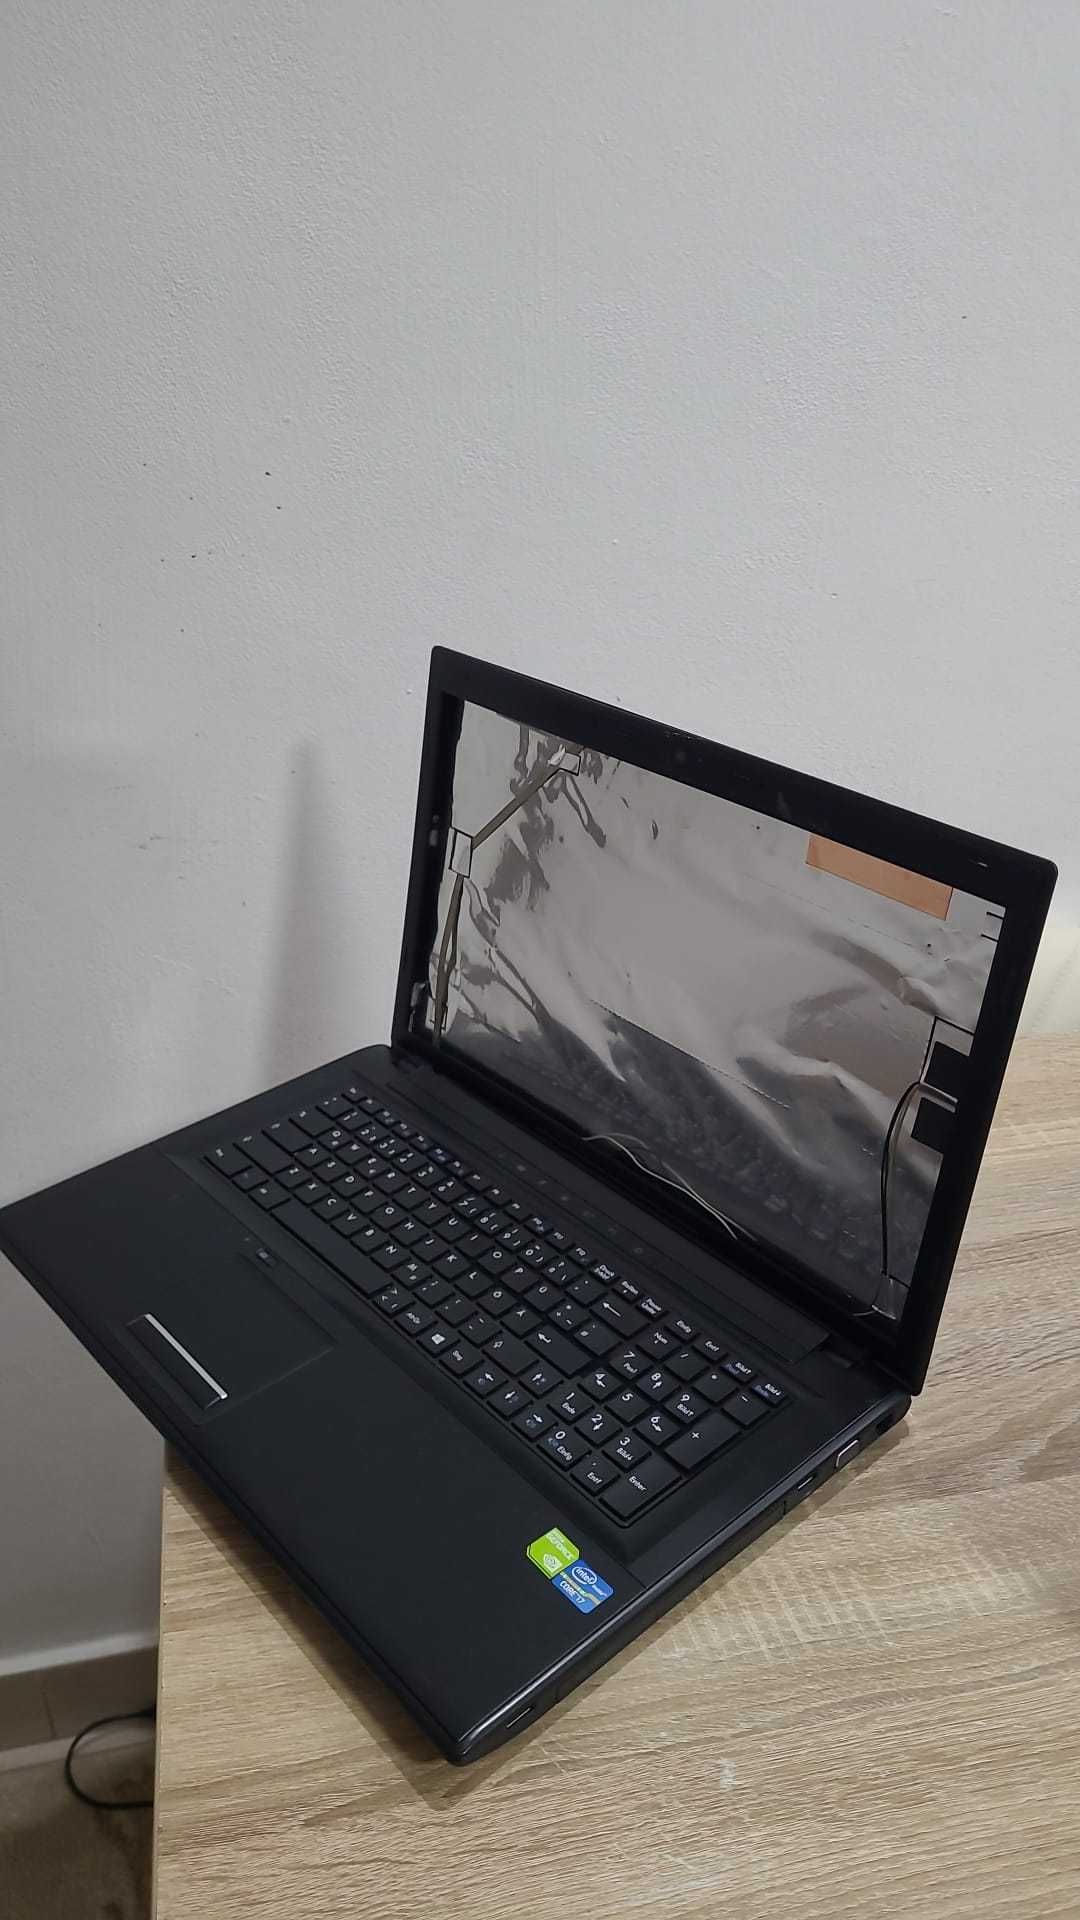 dezmembrez laptop TERRA MOBILE 1774p plac de baza functionala